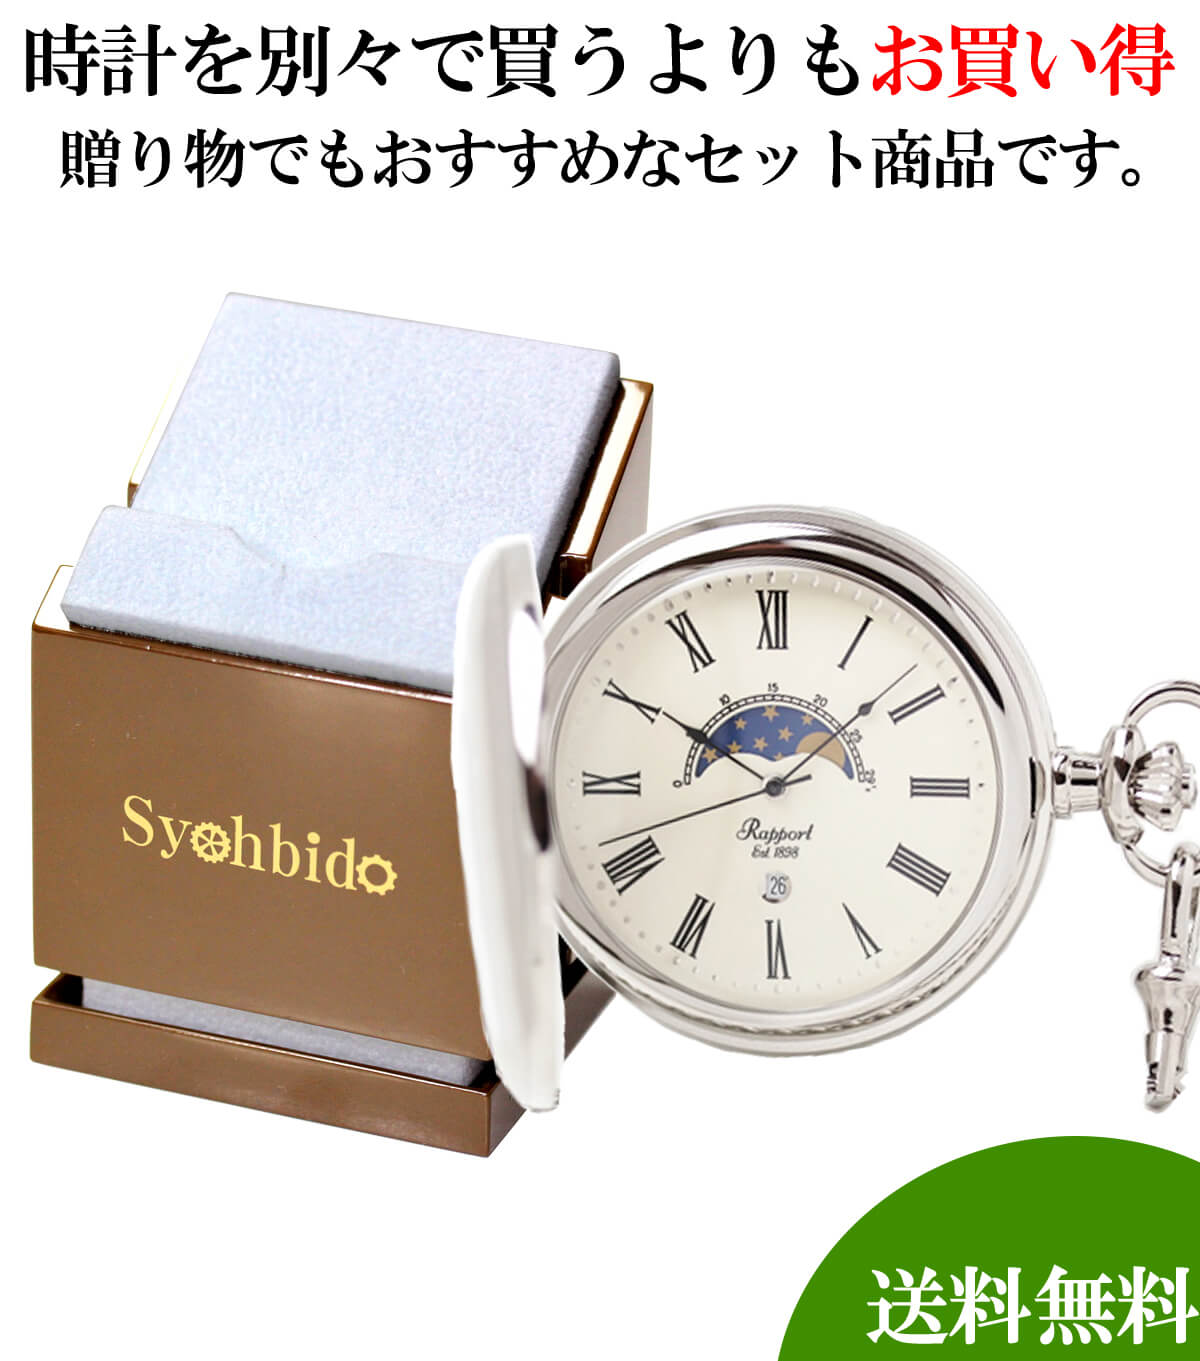 懐中時計と懐中時計専用スタンドのセット pw81